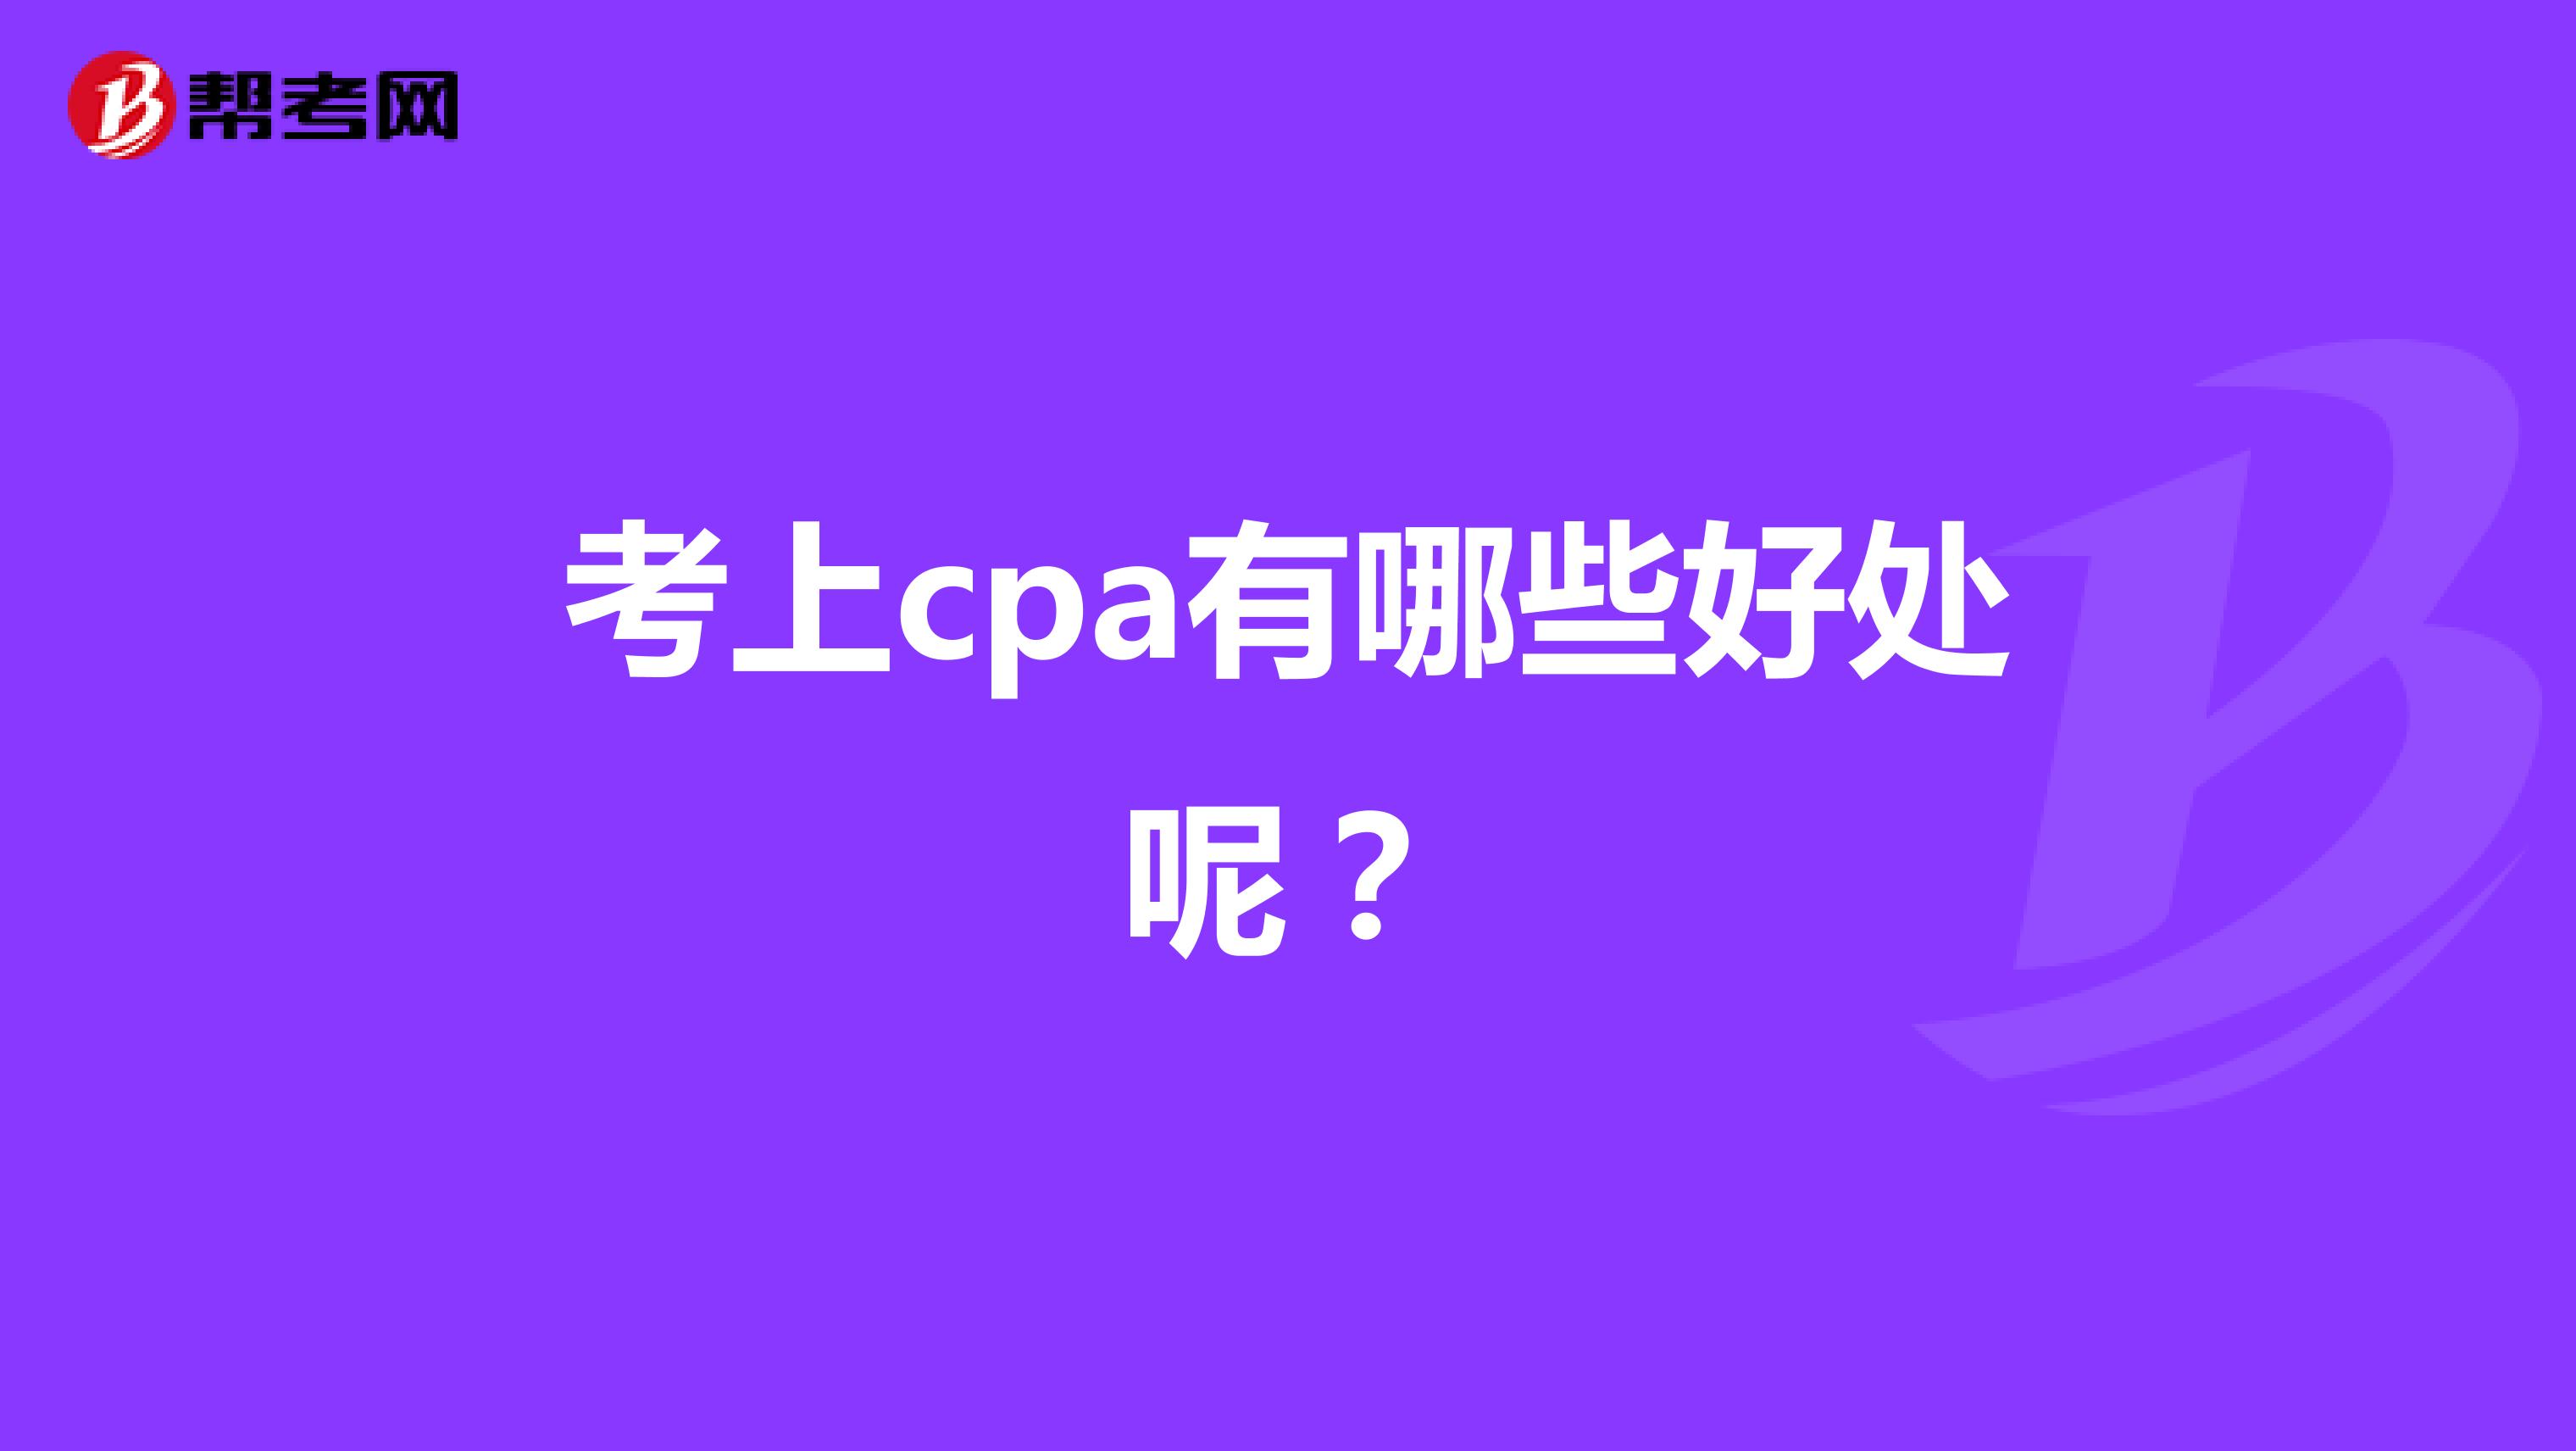 考上cpa有哪些好处呢？